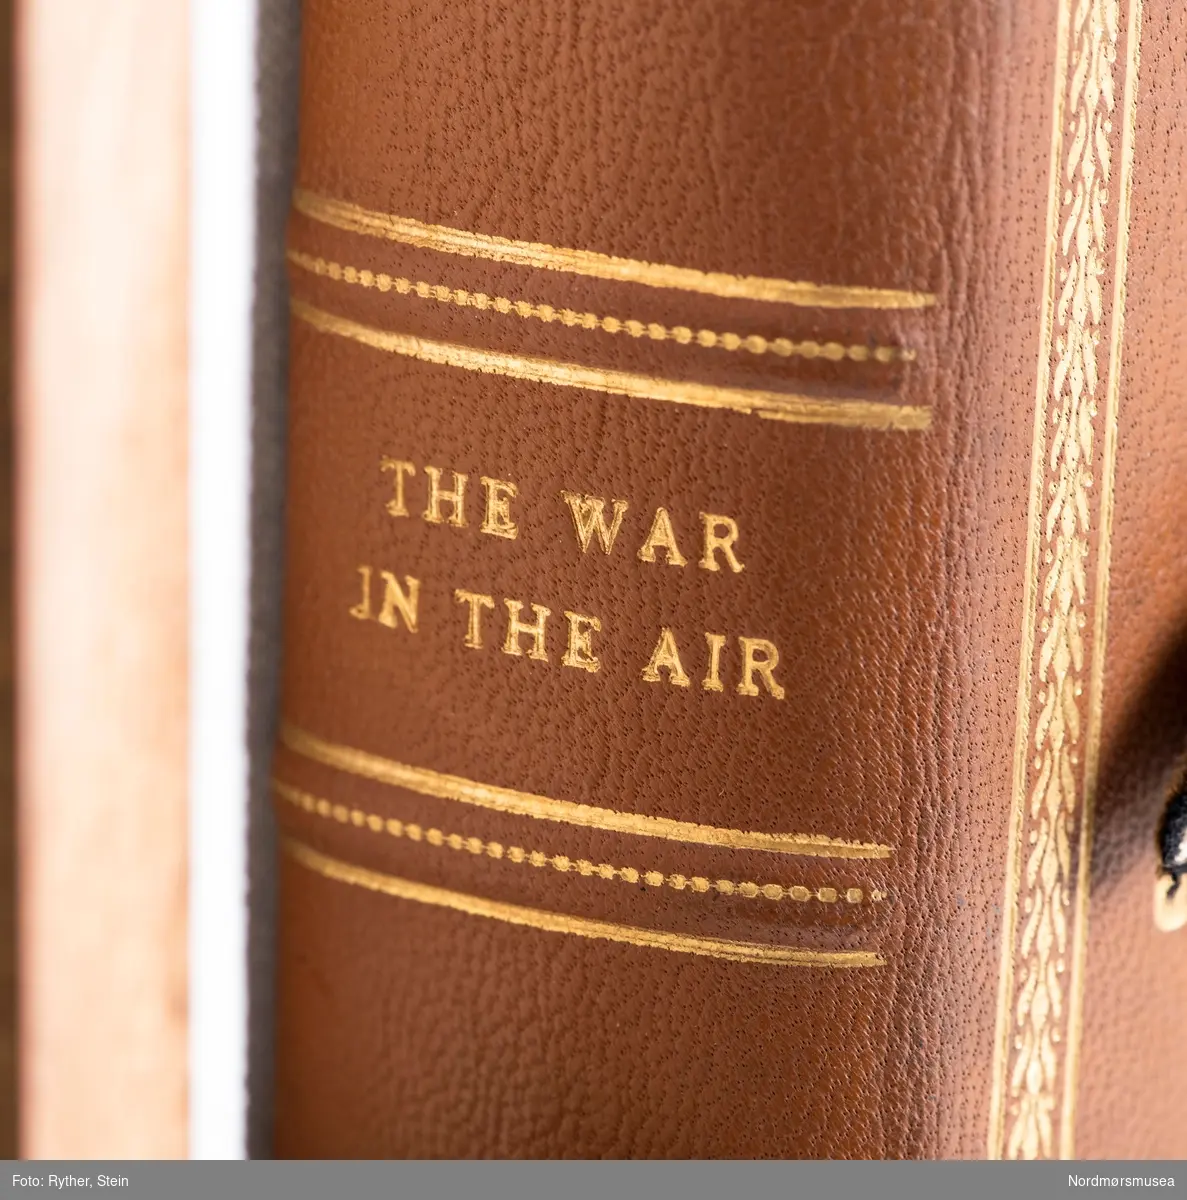 Boken "The war in the air, vol. IV" av H.A Jones. Trykket i 1934 av Clarendon Press, Oxford. Medfølger et monter. Omgjort til et minnealbum av tidligere eier. Inneholder fotografier, håndskrevne ark og tegninger med påført tekst.